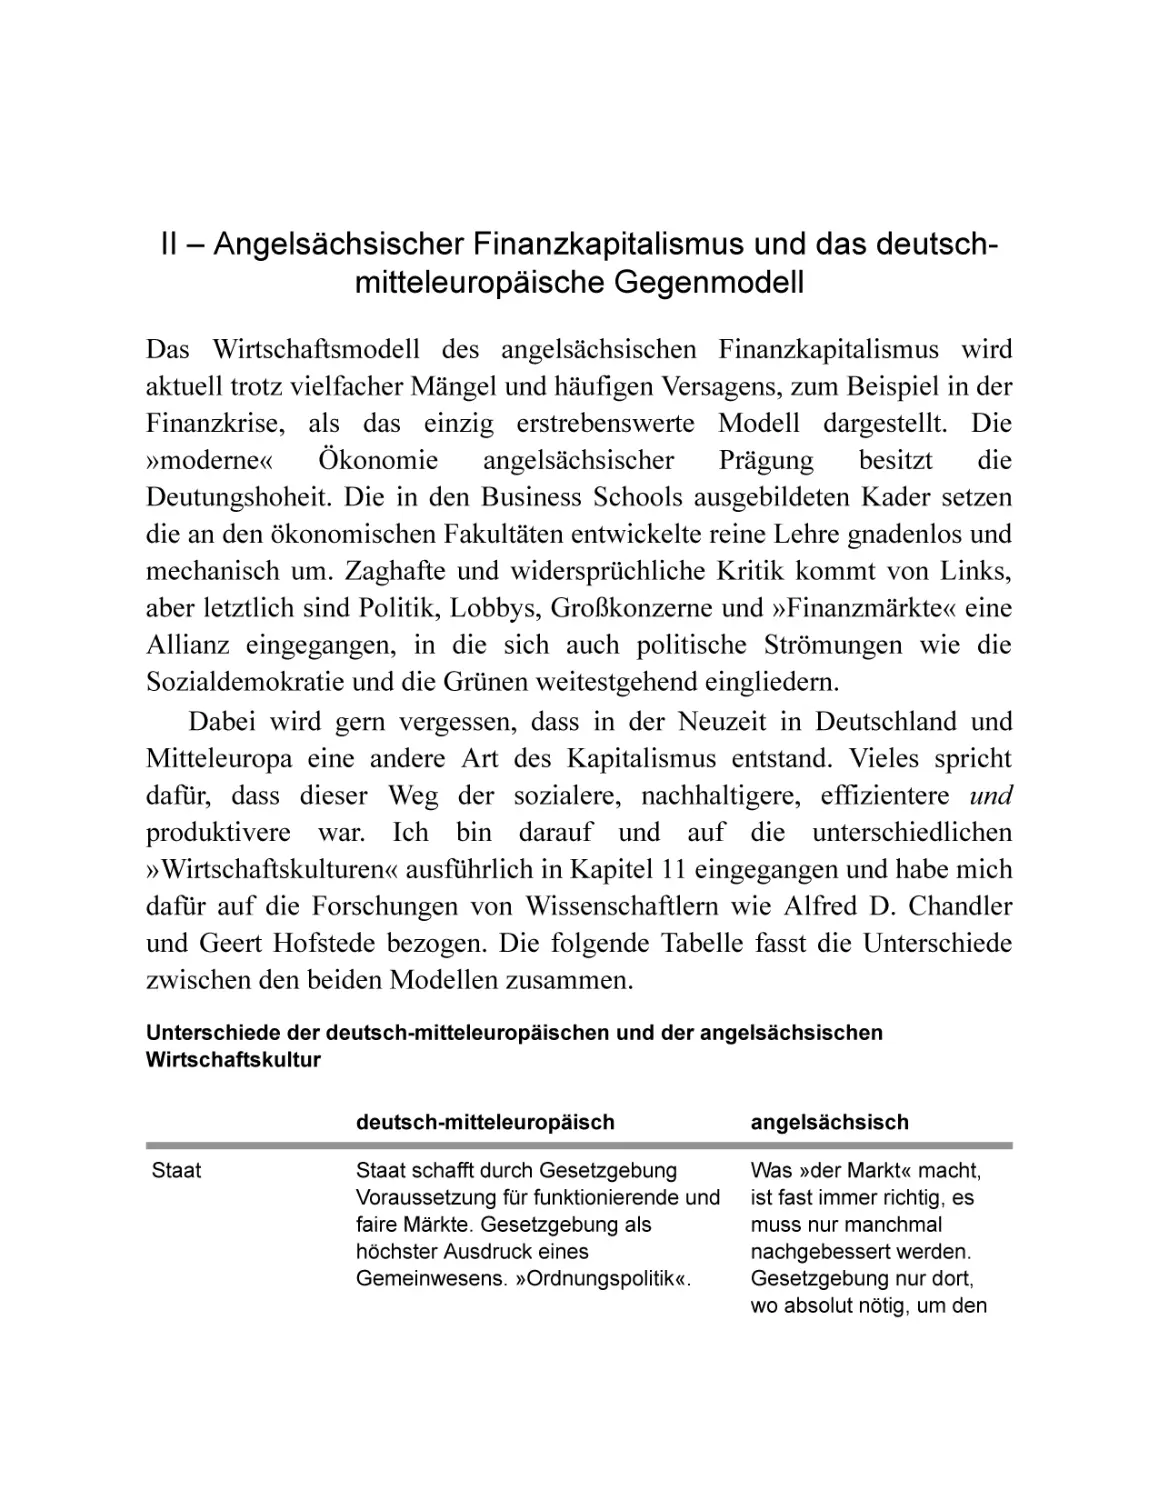 II – Angelsächsischer Finanzkapitalismus und das deutsch-mitteleuropäische Gegenmodell